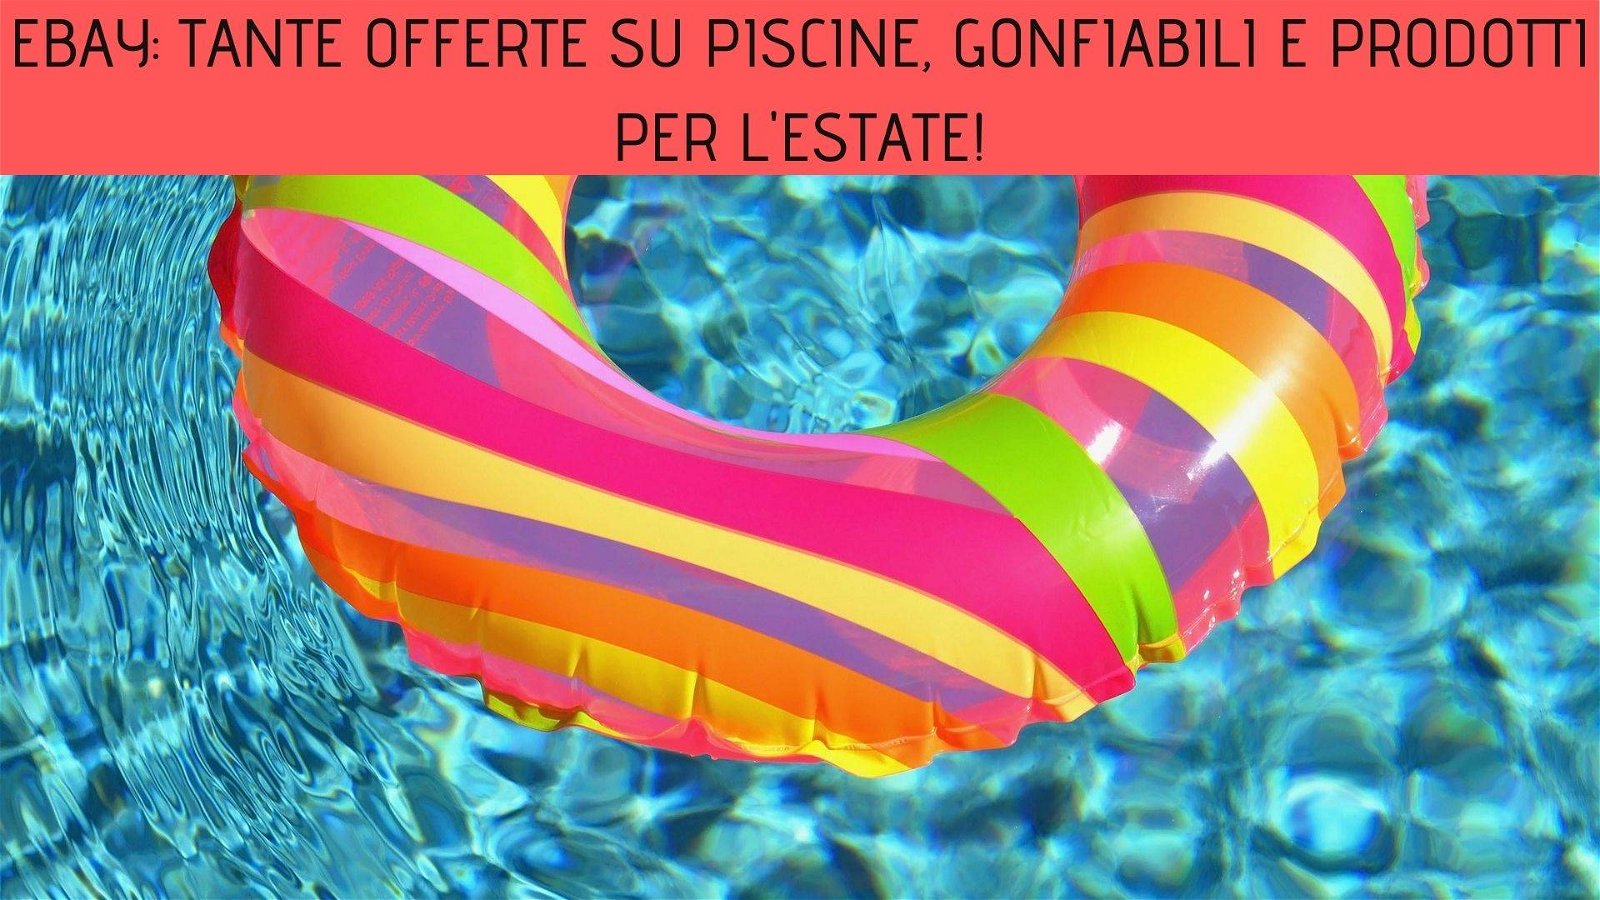 Immagine di eBay: tante offerte su piscine, gonfiabili e prodotti per l'estate!